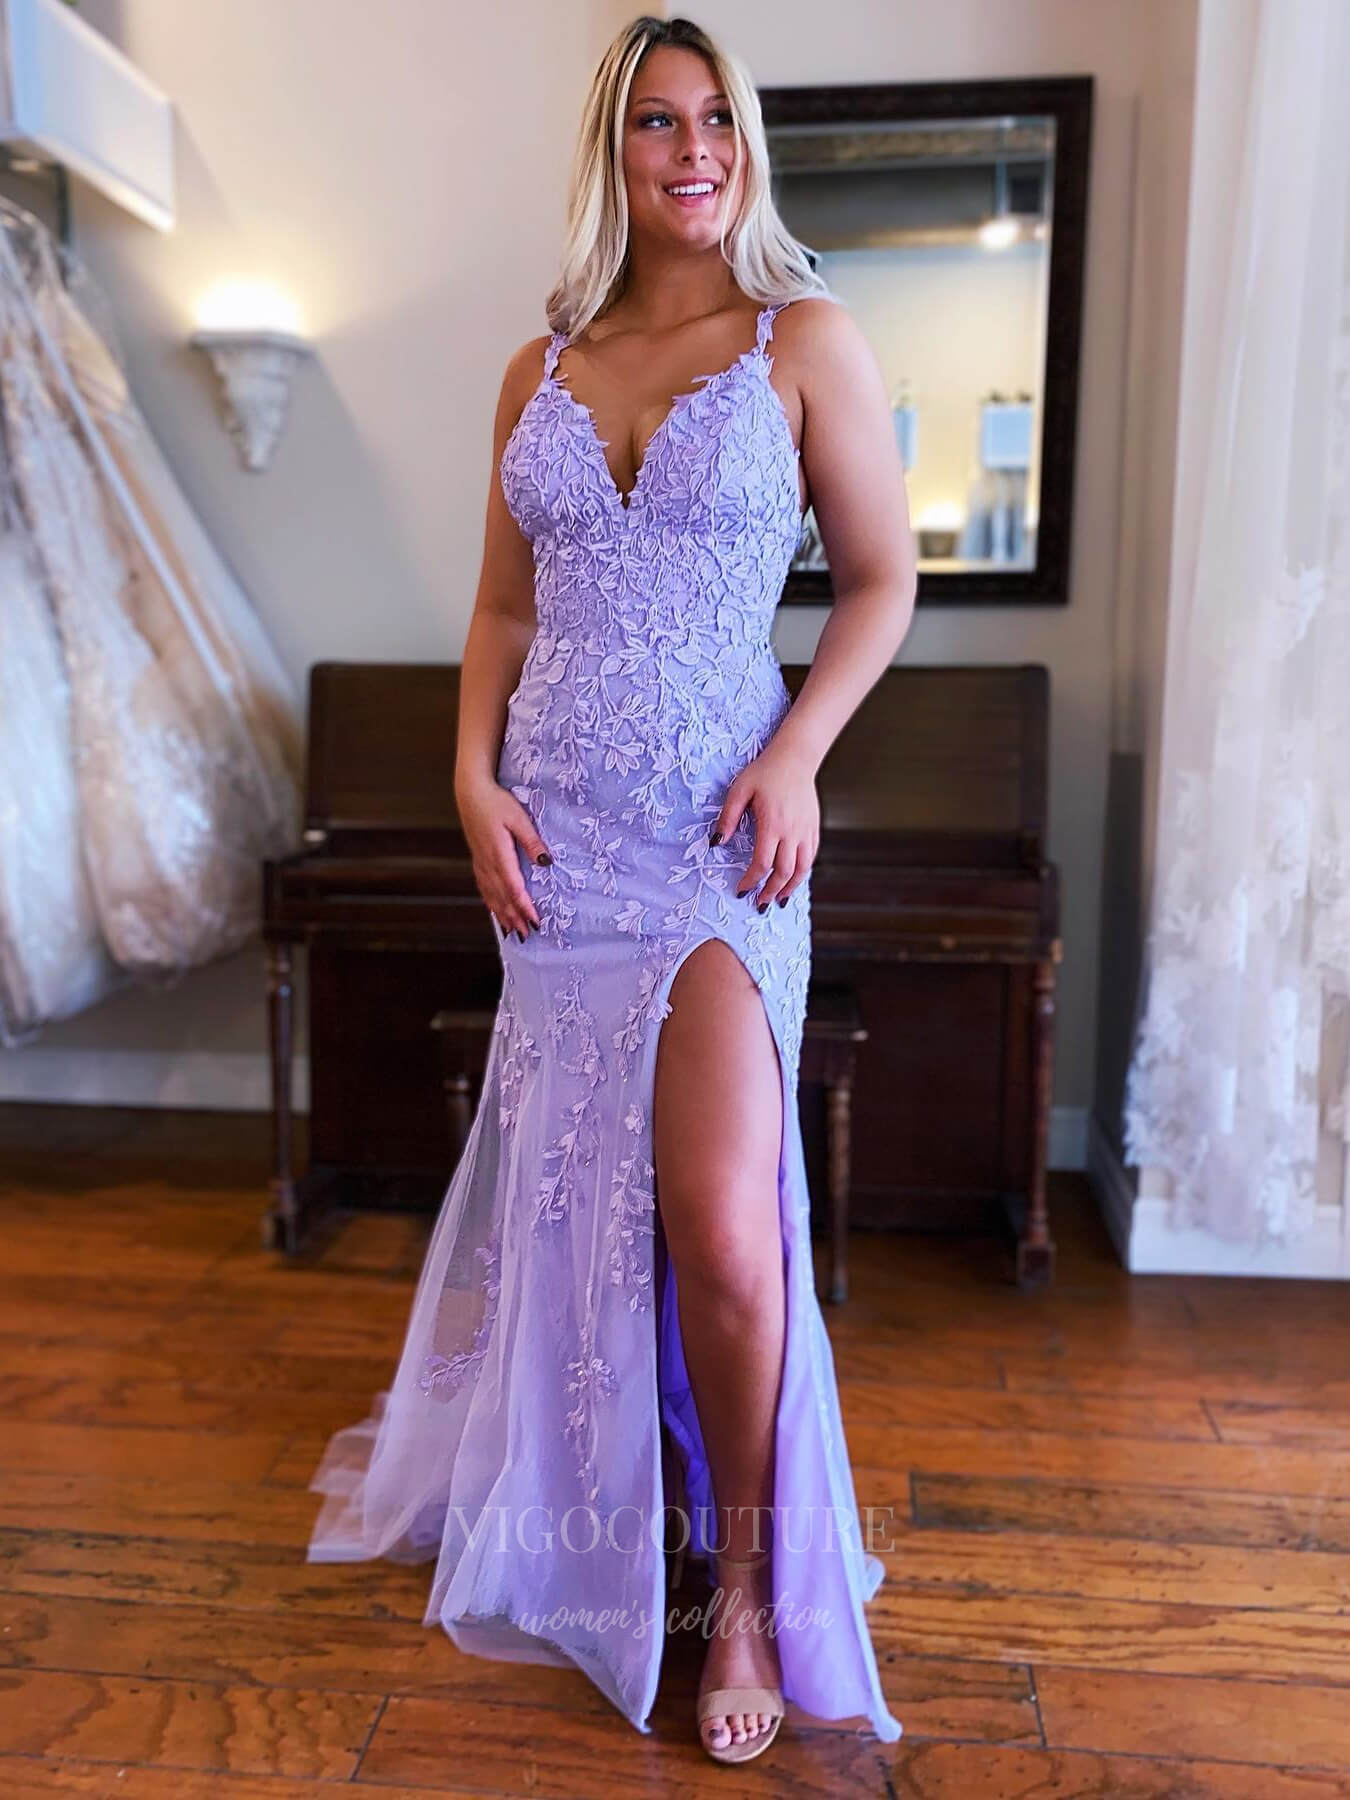 vigocouture-Lace Applique Mermaid Spaghetti Strap Prom Dress 20926-Prom Dresses-vigocouture-Lavender-US2-